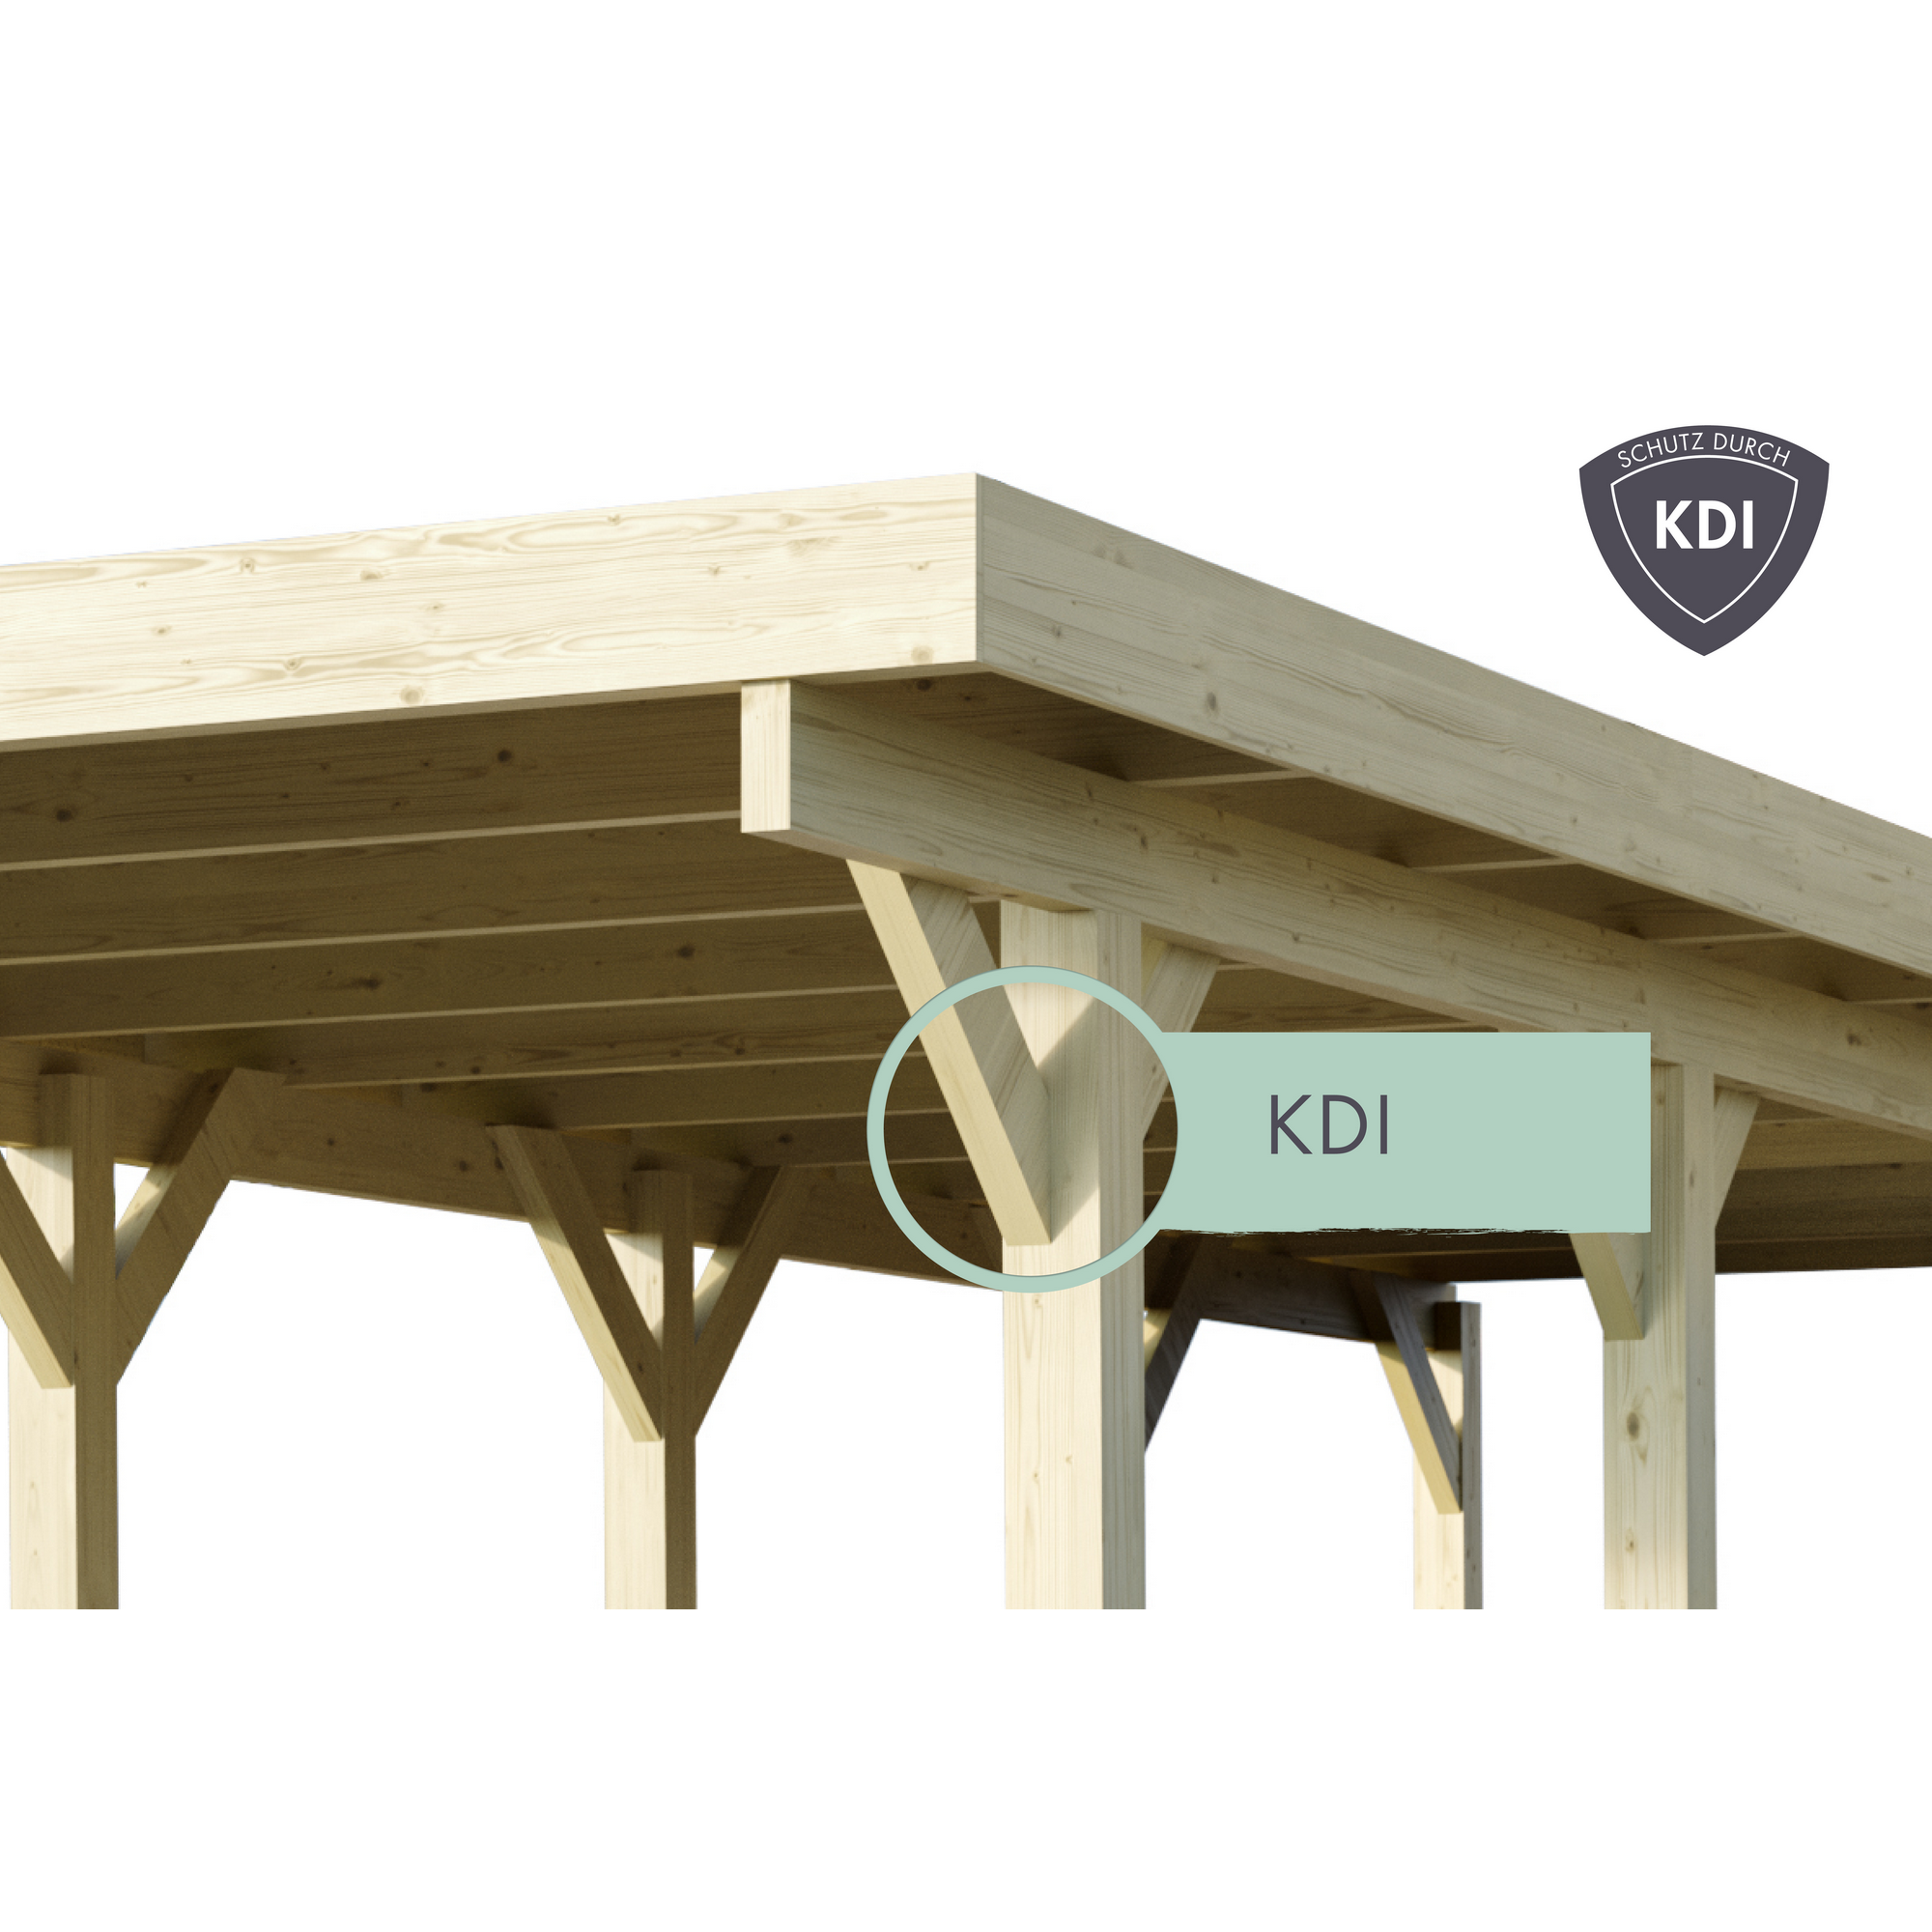 Einzelcarport 'Carlos 2' Kiefer PVC-Dach mit einem Einfahrtsbogen 670 x 318 x 234 cm + product picture